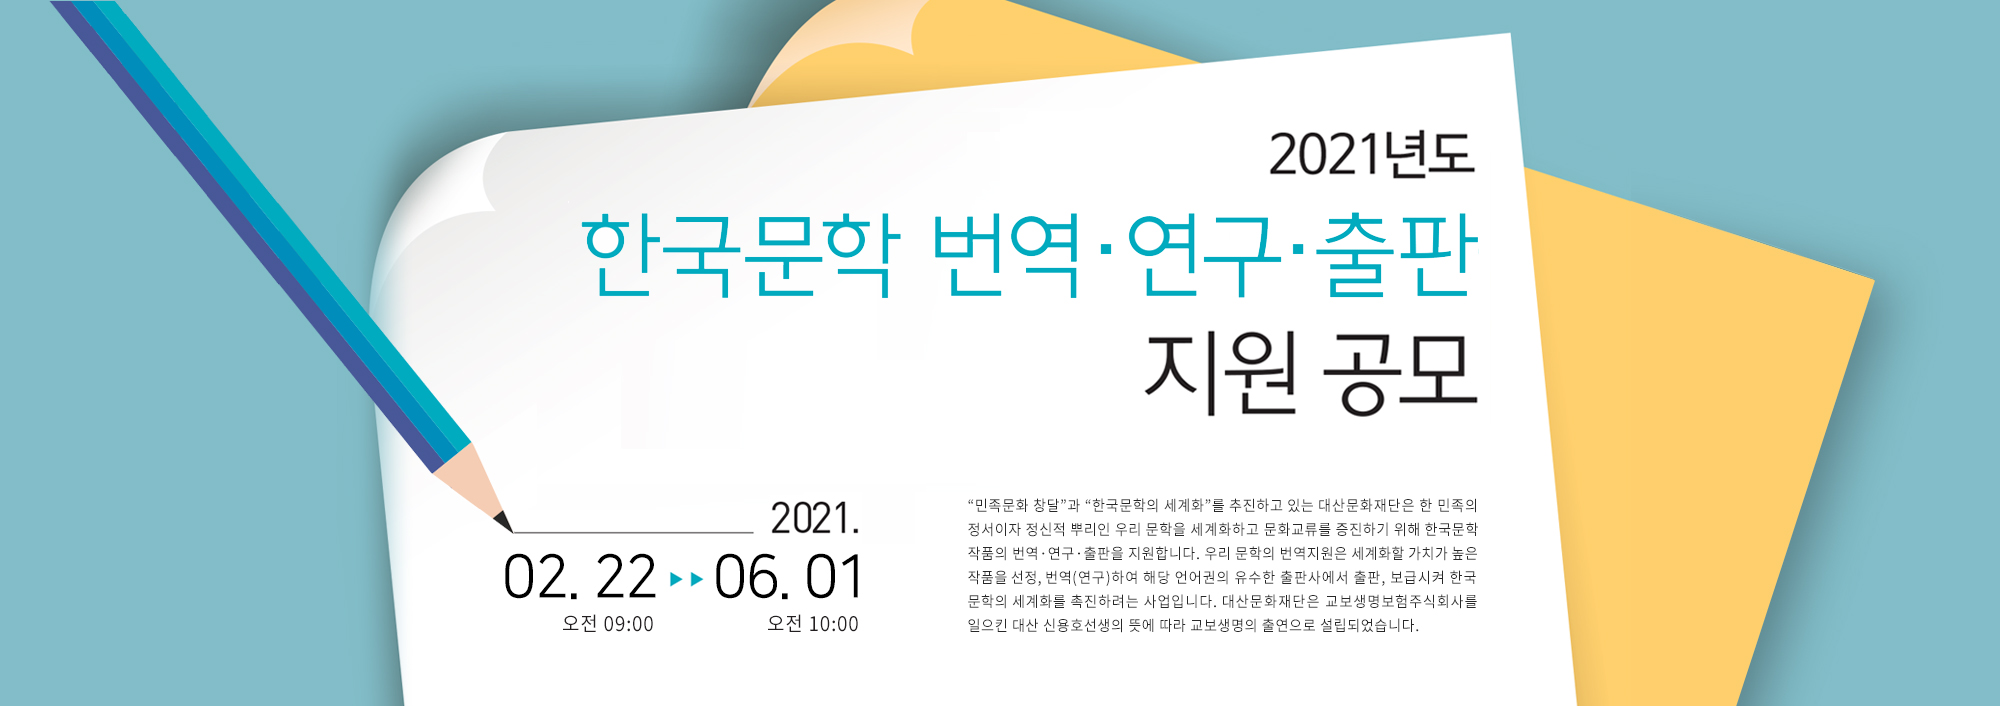 2021년도 한국문학 번역ㆍ연구ㆍ출판지원 포스터